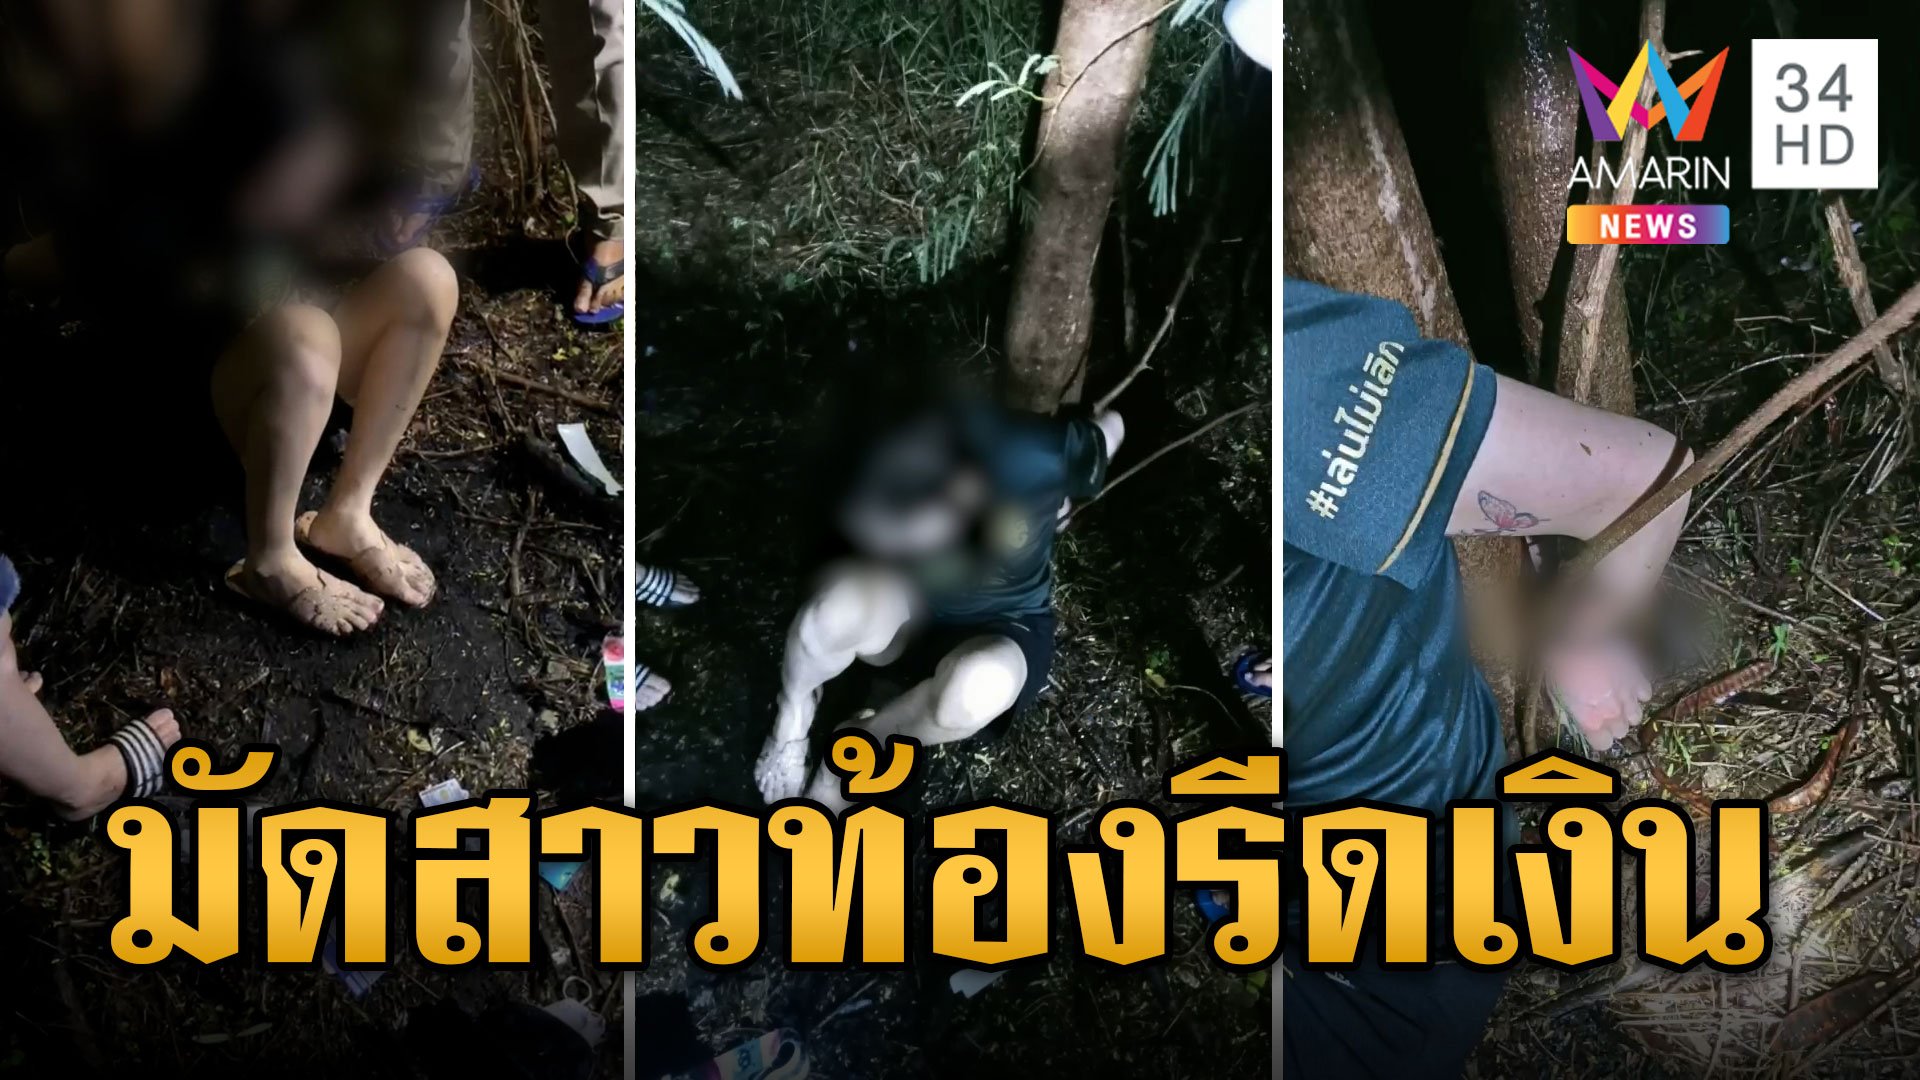 พิรุธเพียบ! สาวท้องถูกจับมัดกลางป่า รีดเงิน 8 หมื่น | ข่าวอรุณอมรินทร์ | 31 พ.ค. 67 | AMARIN TVHD34